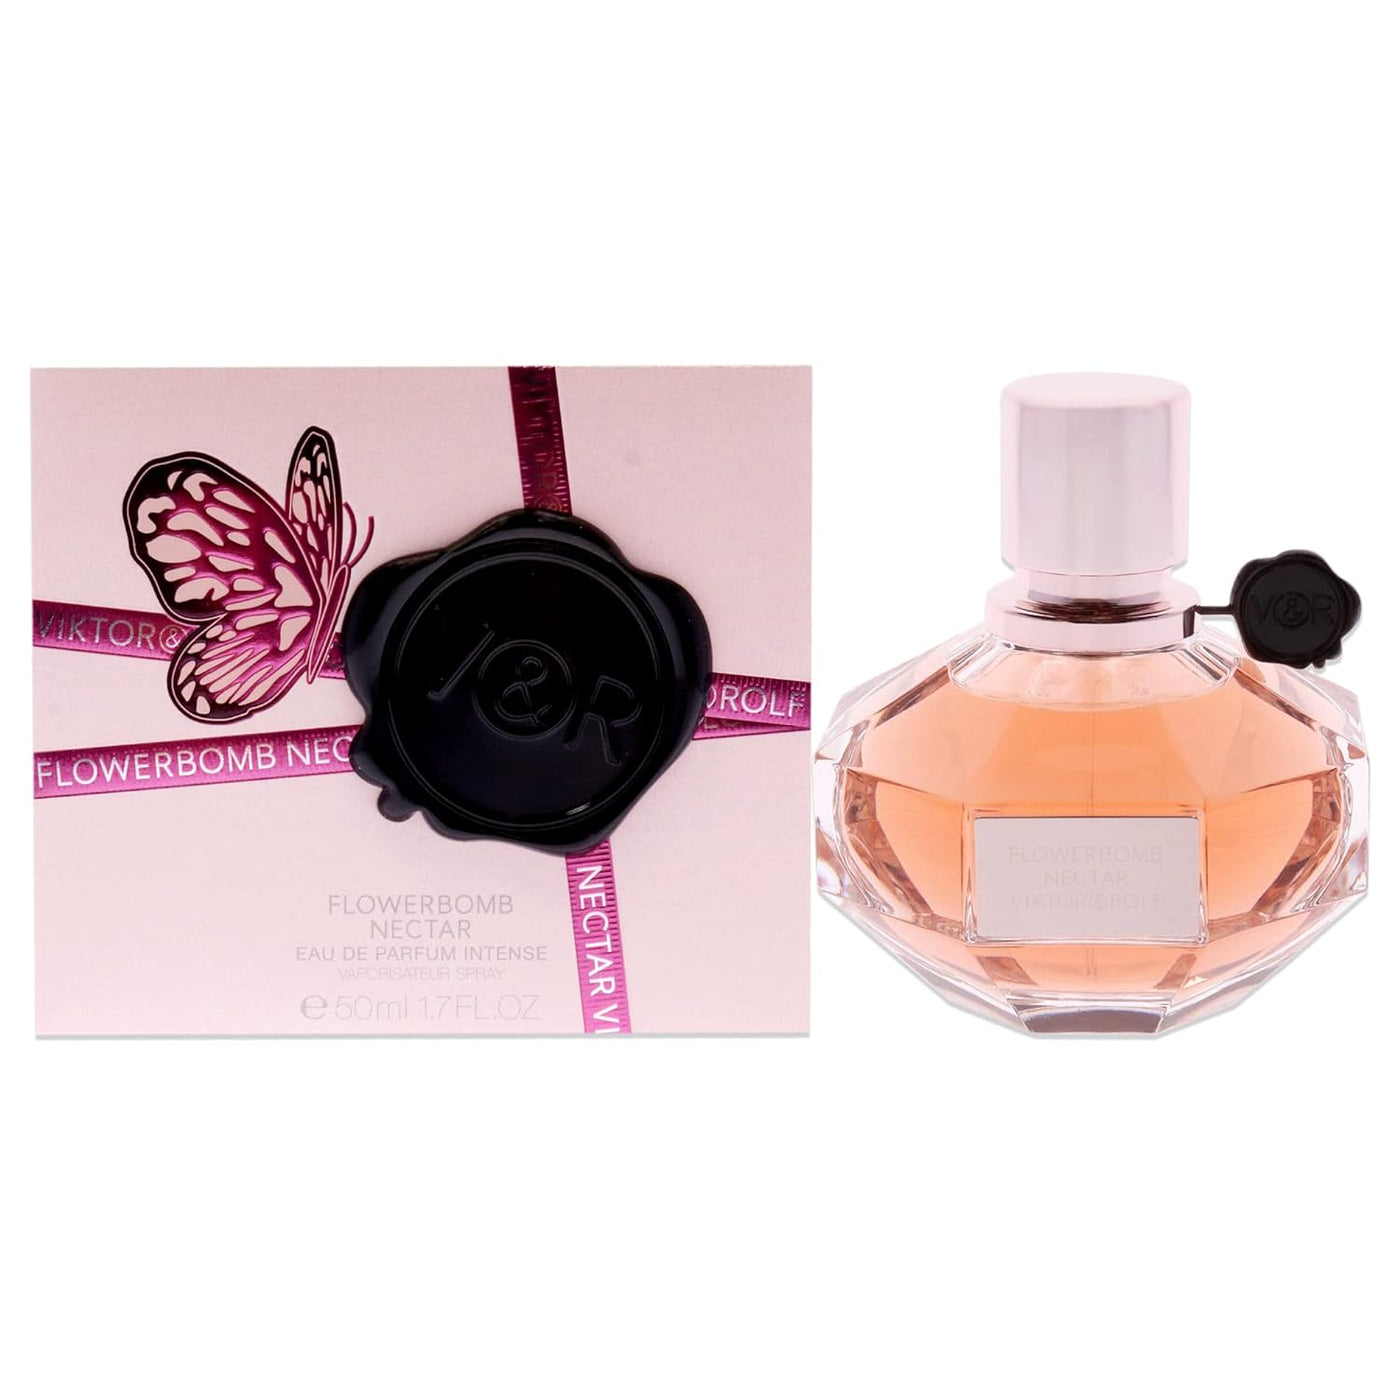 Viktor & Rolf Flowerbomb Nectar For Women Eau De Parfum Intense 10Ml Miniature